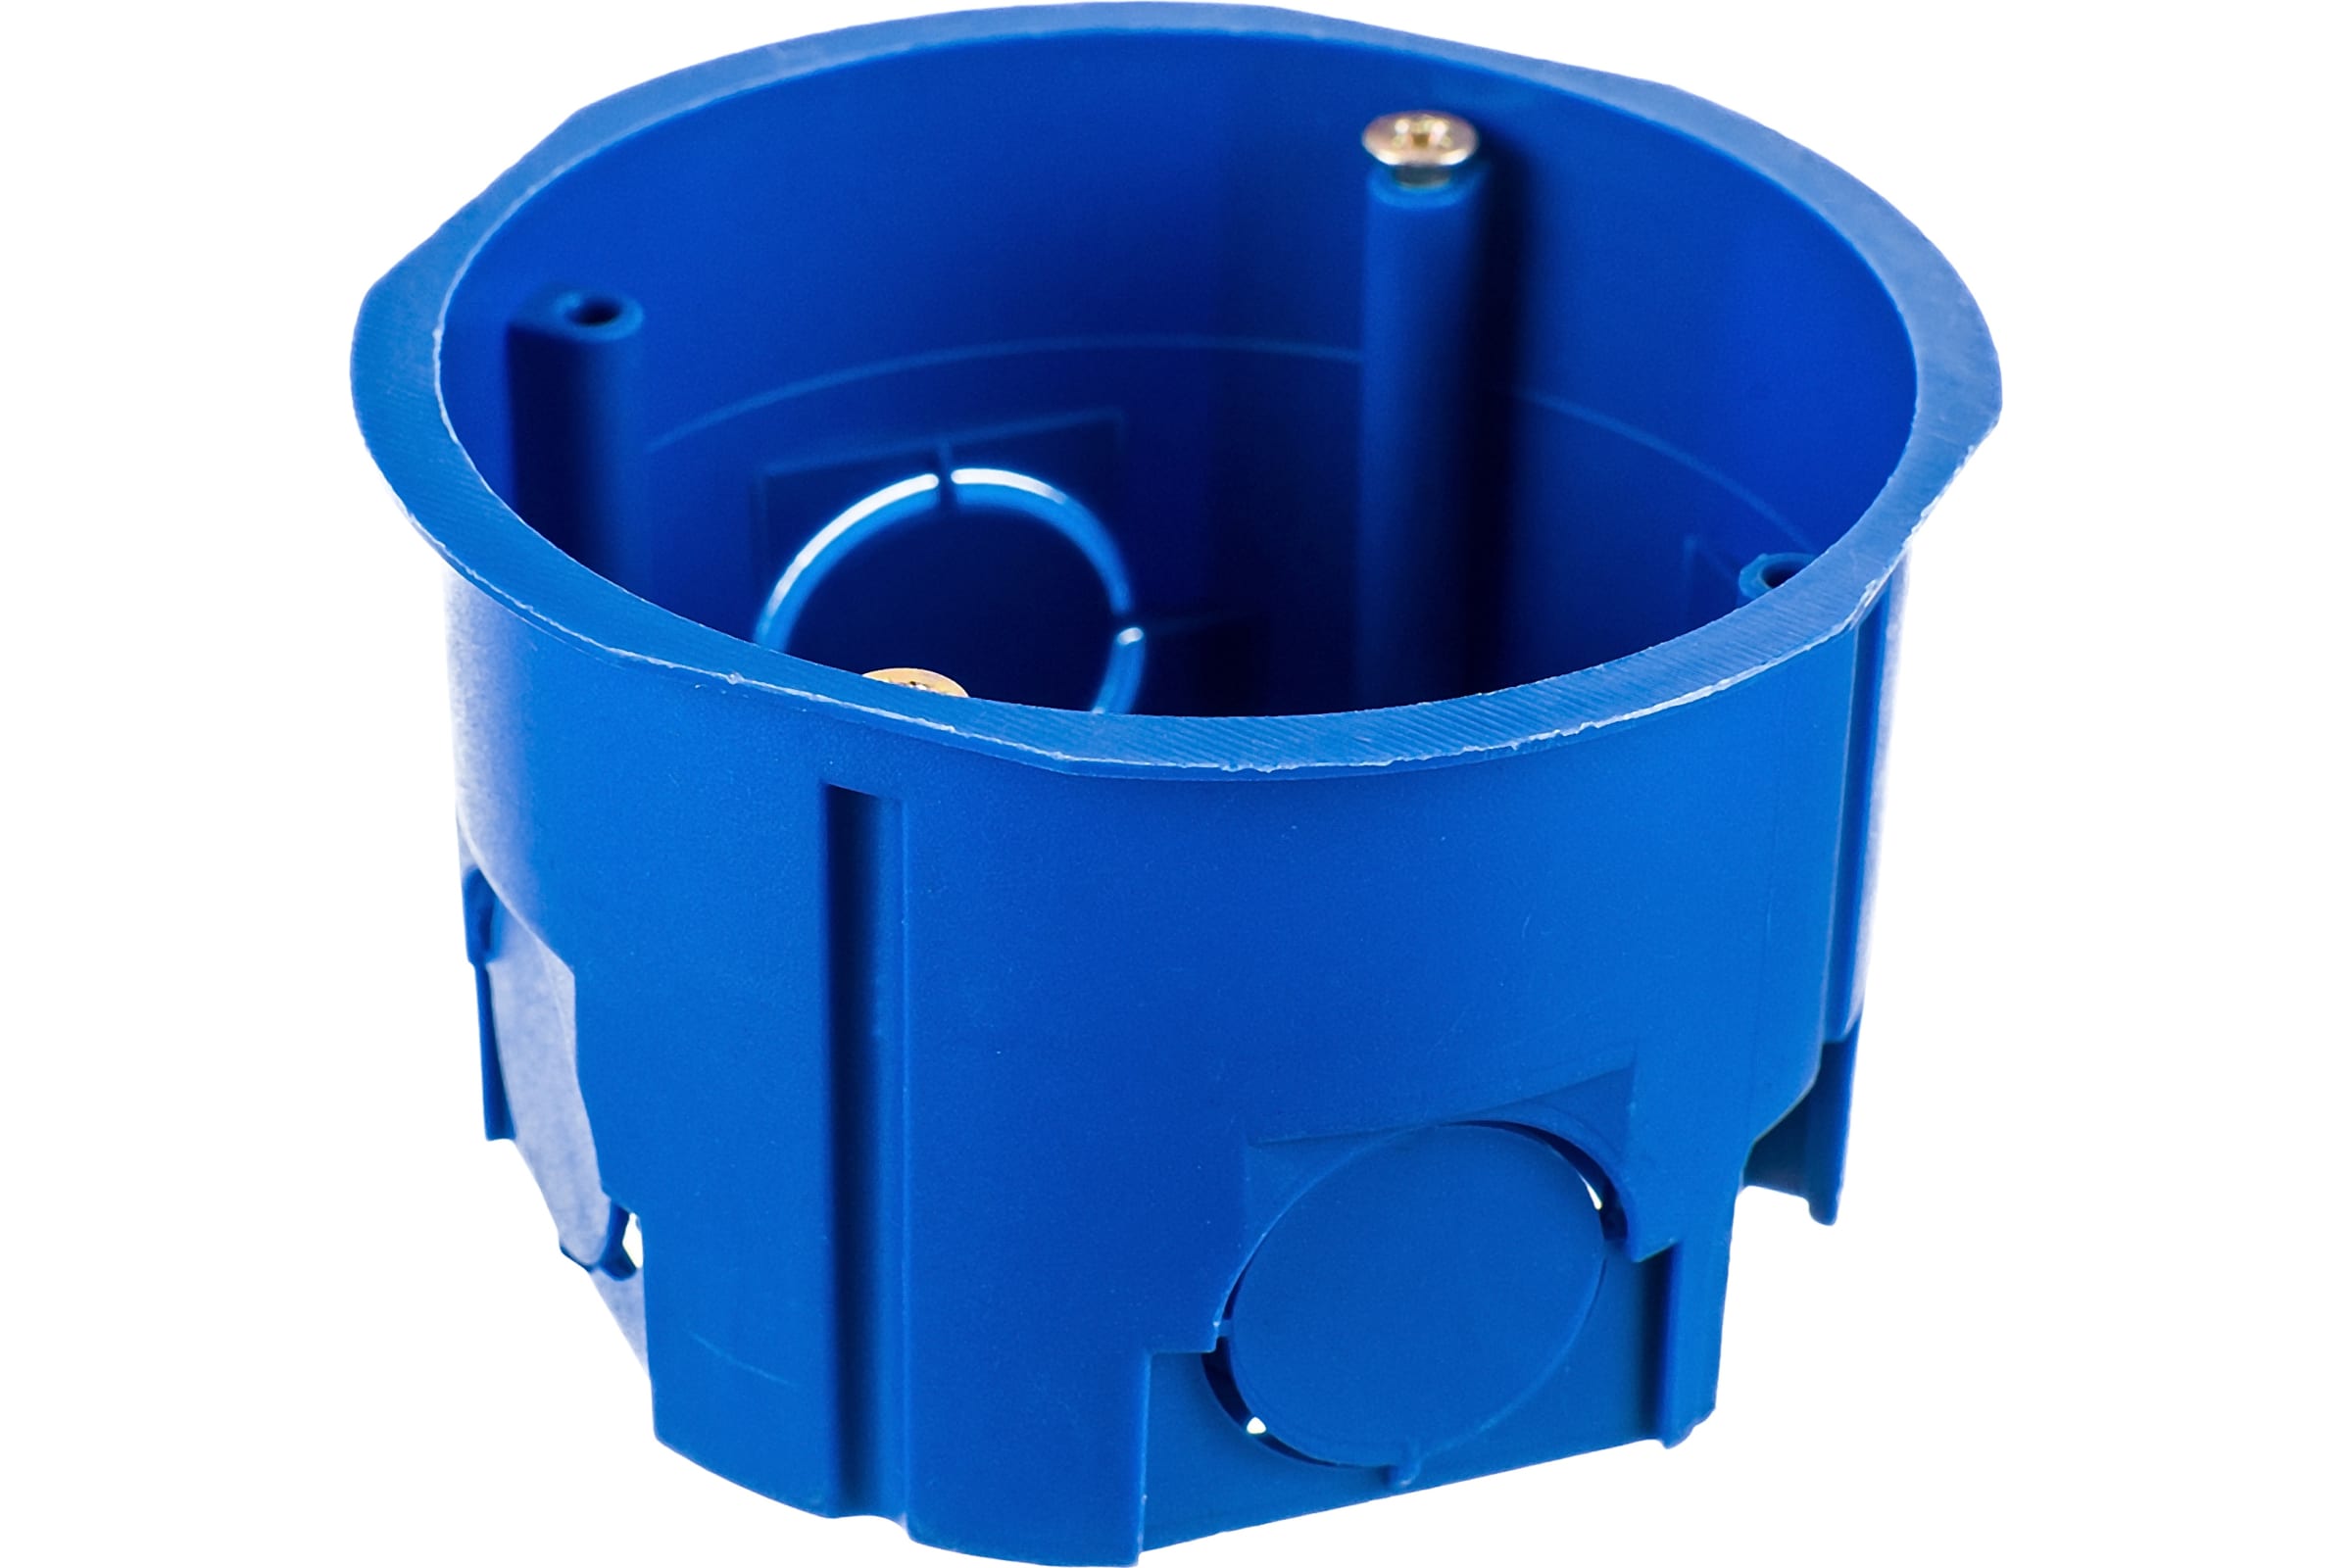 Россия Коробка установочная приборная в бетон УПп 68/45.1.1, синяя установочная коробка в бетон ruvinil